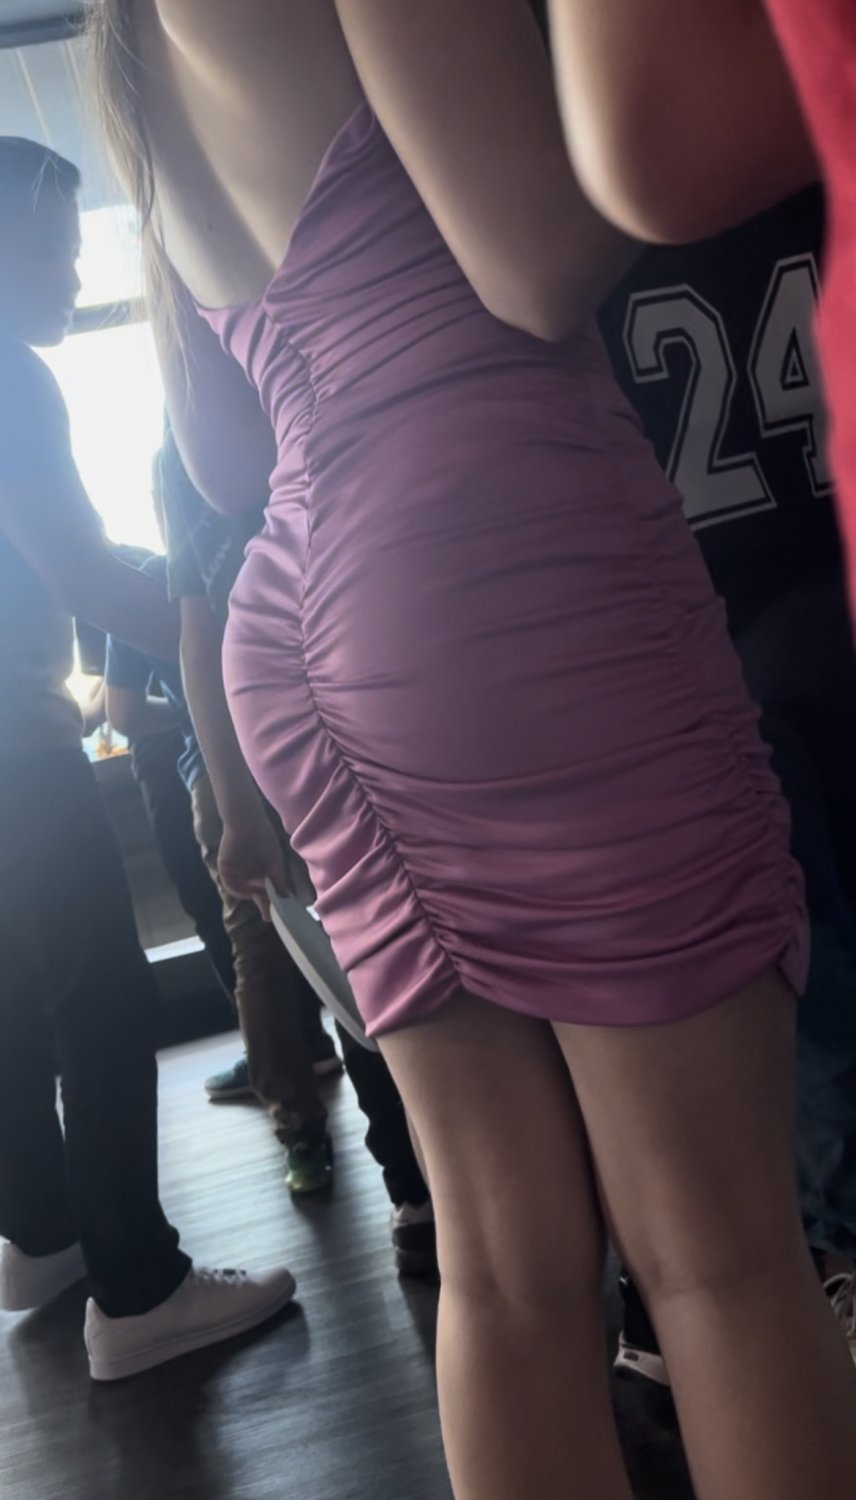 Teen Tight Dress - Hot teen ass tight dress - Porn Videos & Photos - EroMe